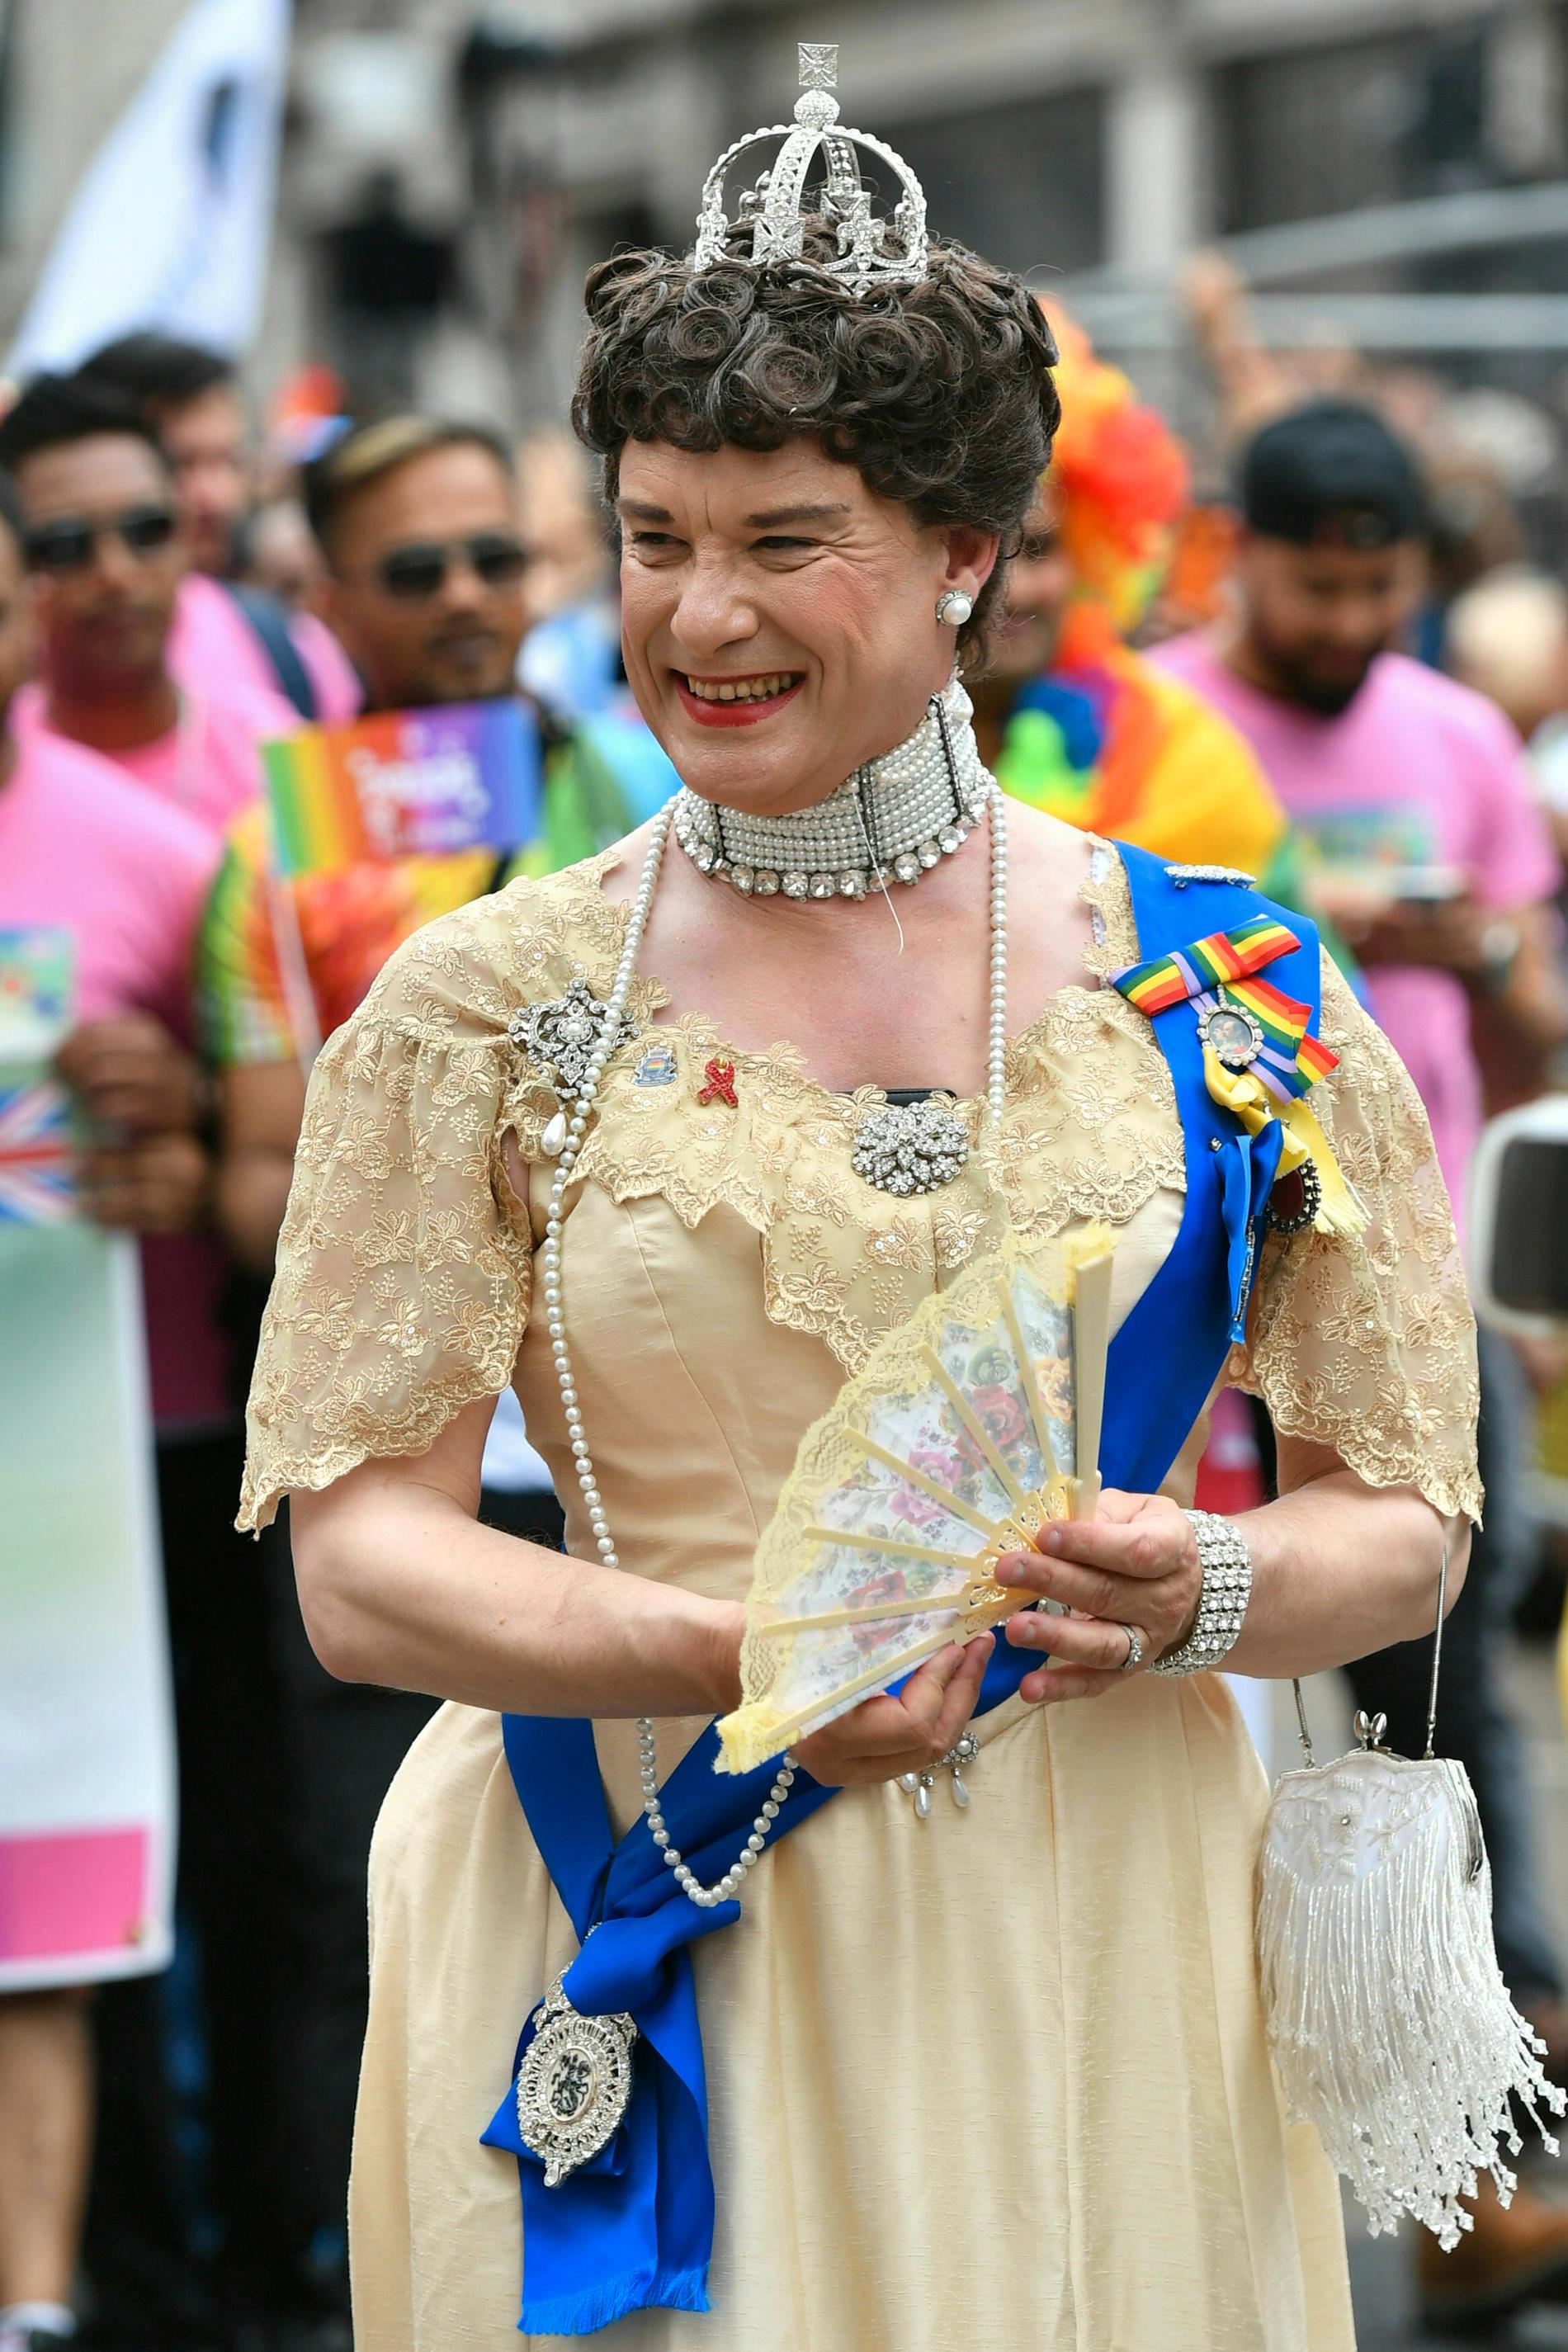 En pridedeltagare i London gav paraden kunglig glans.